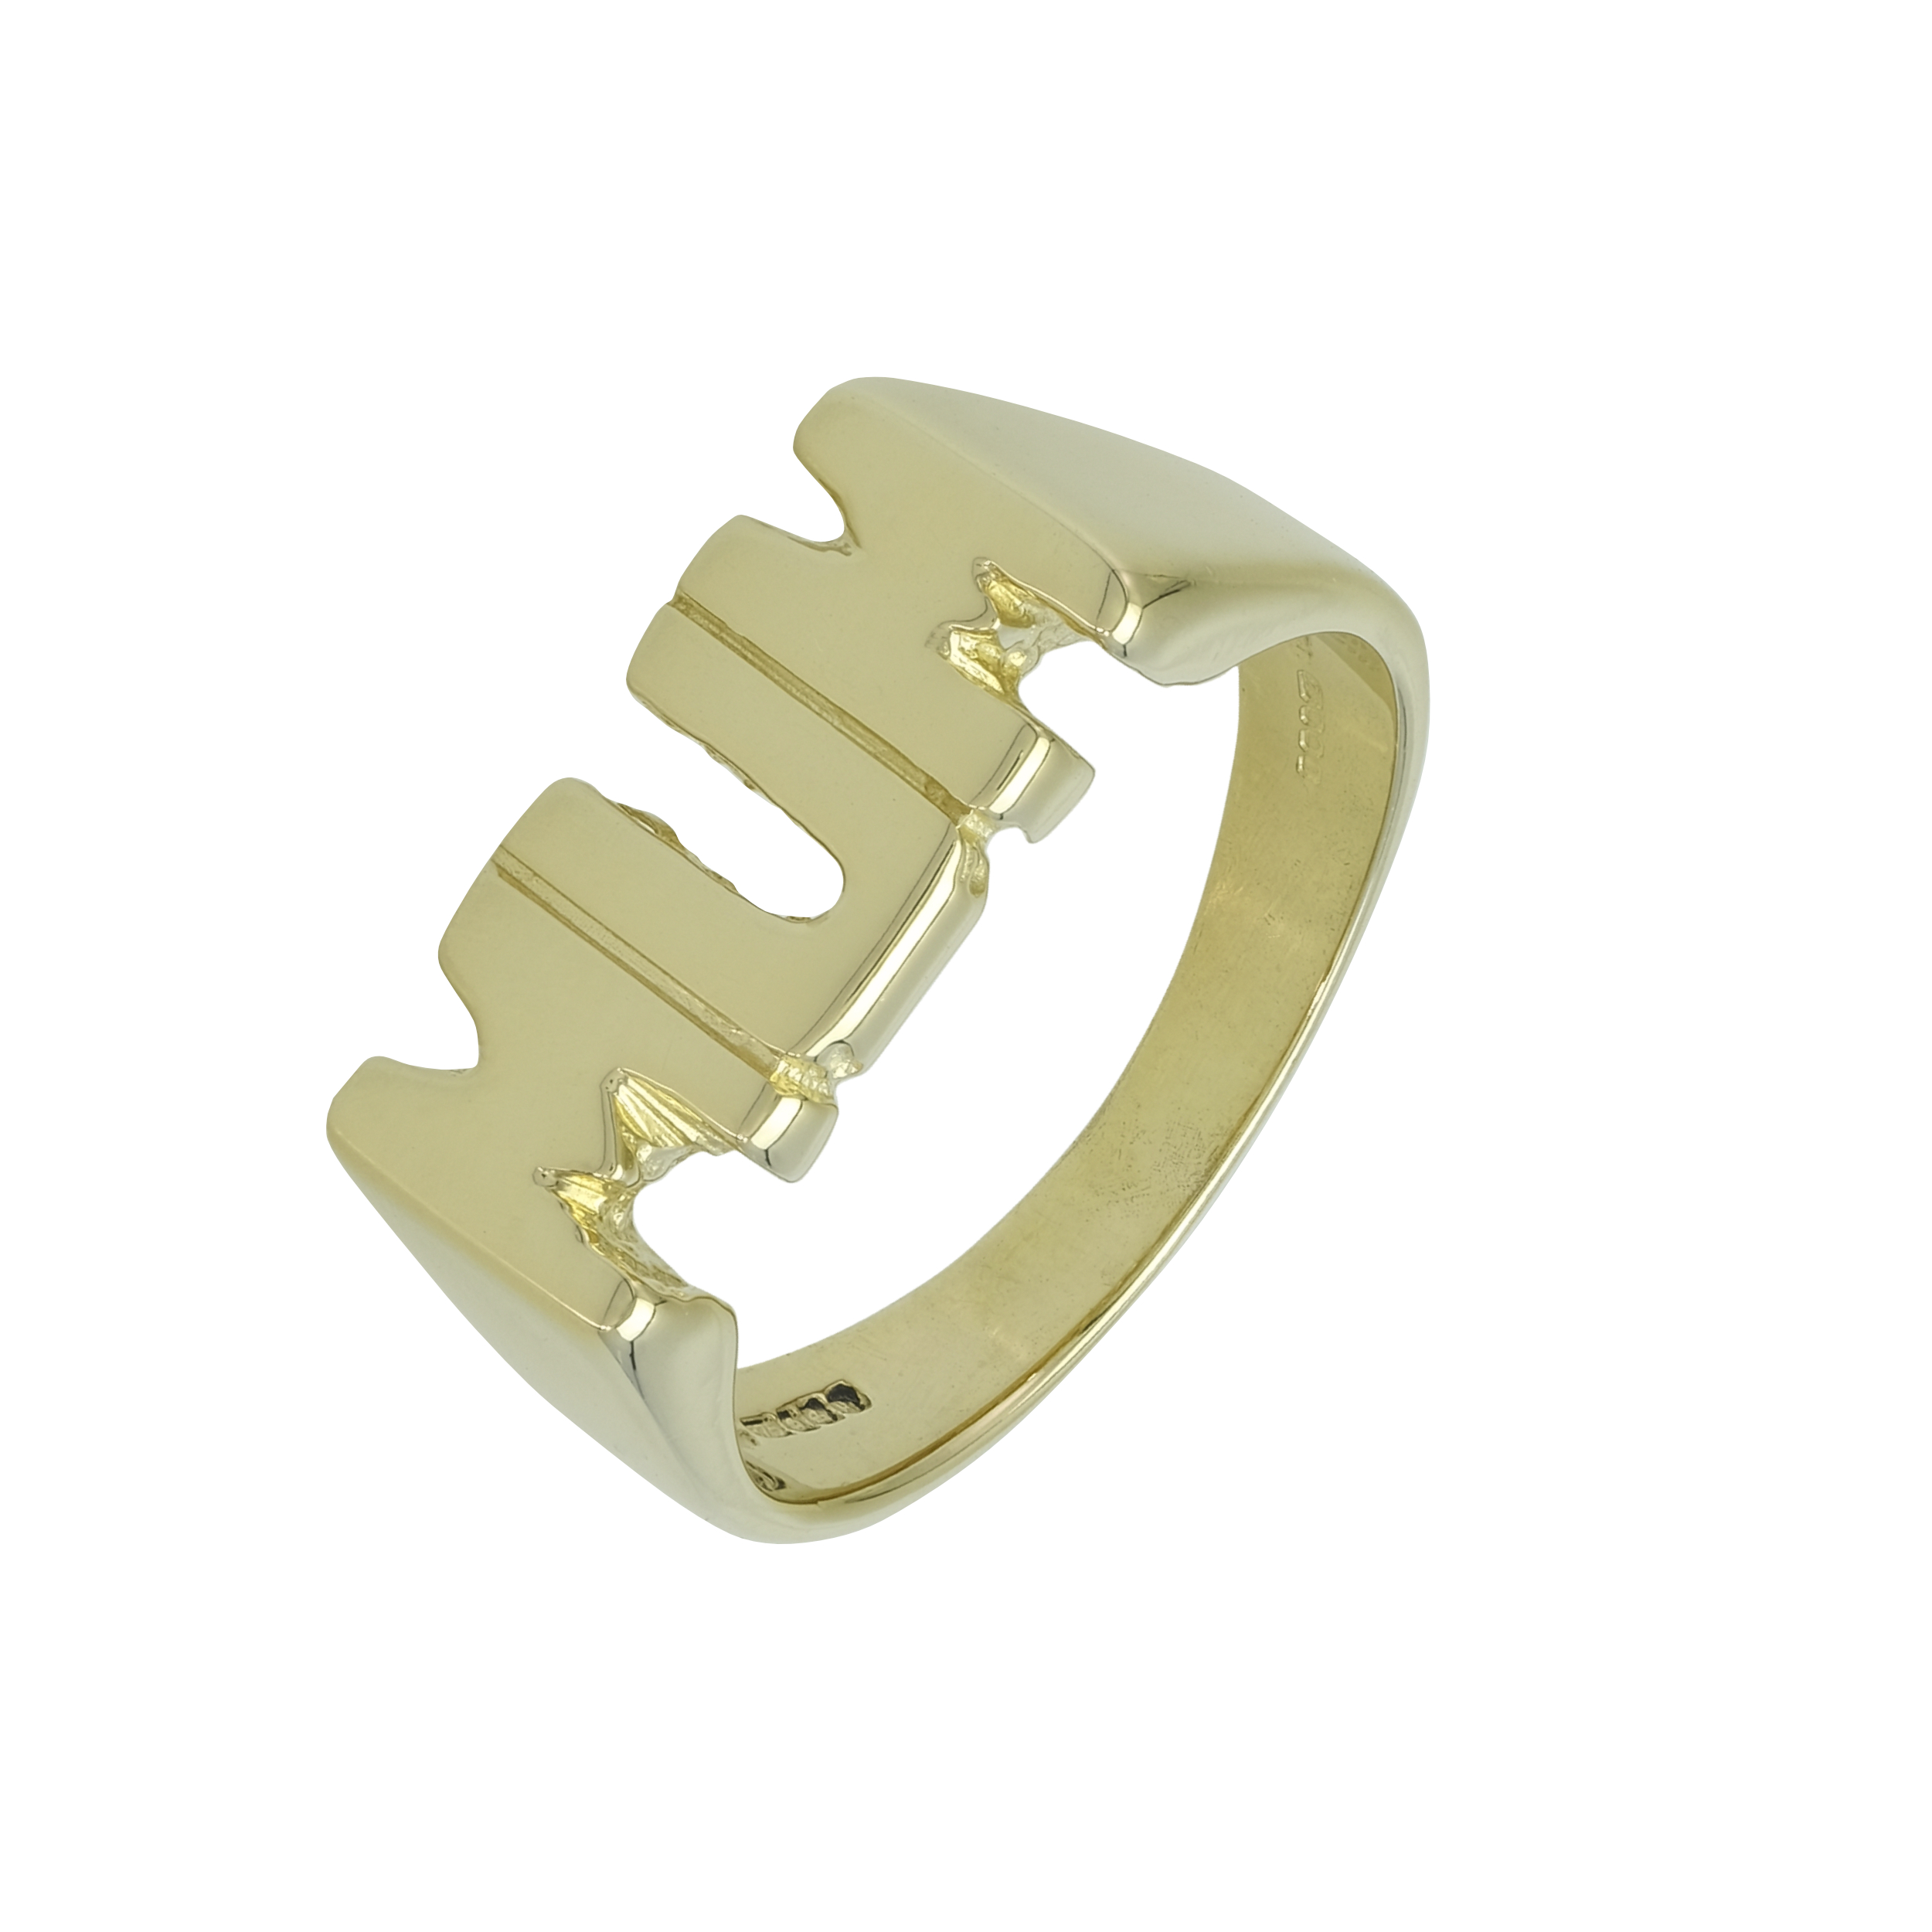 9ct Yellow Gold “MUM” Ring
